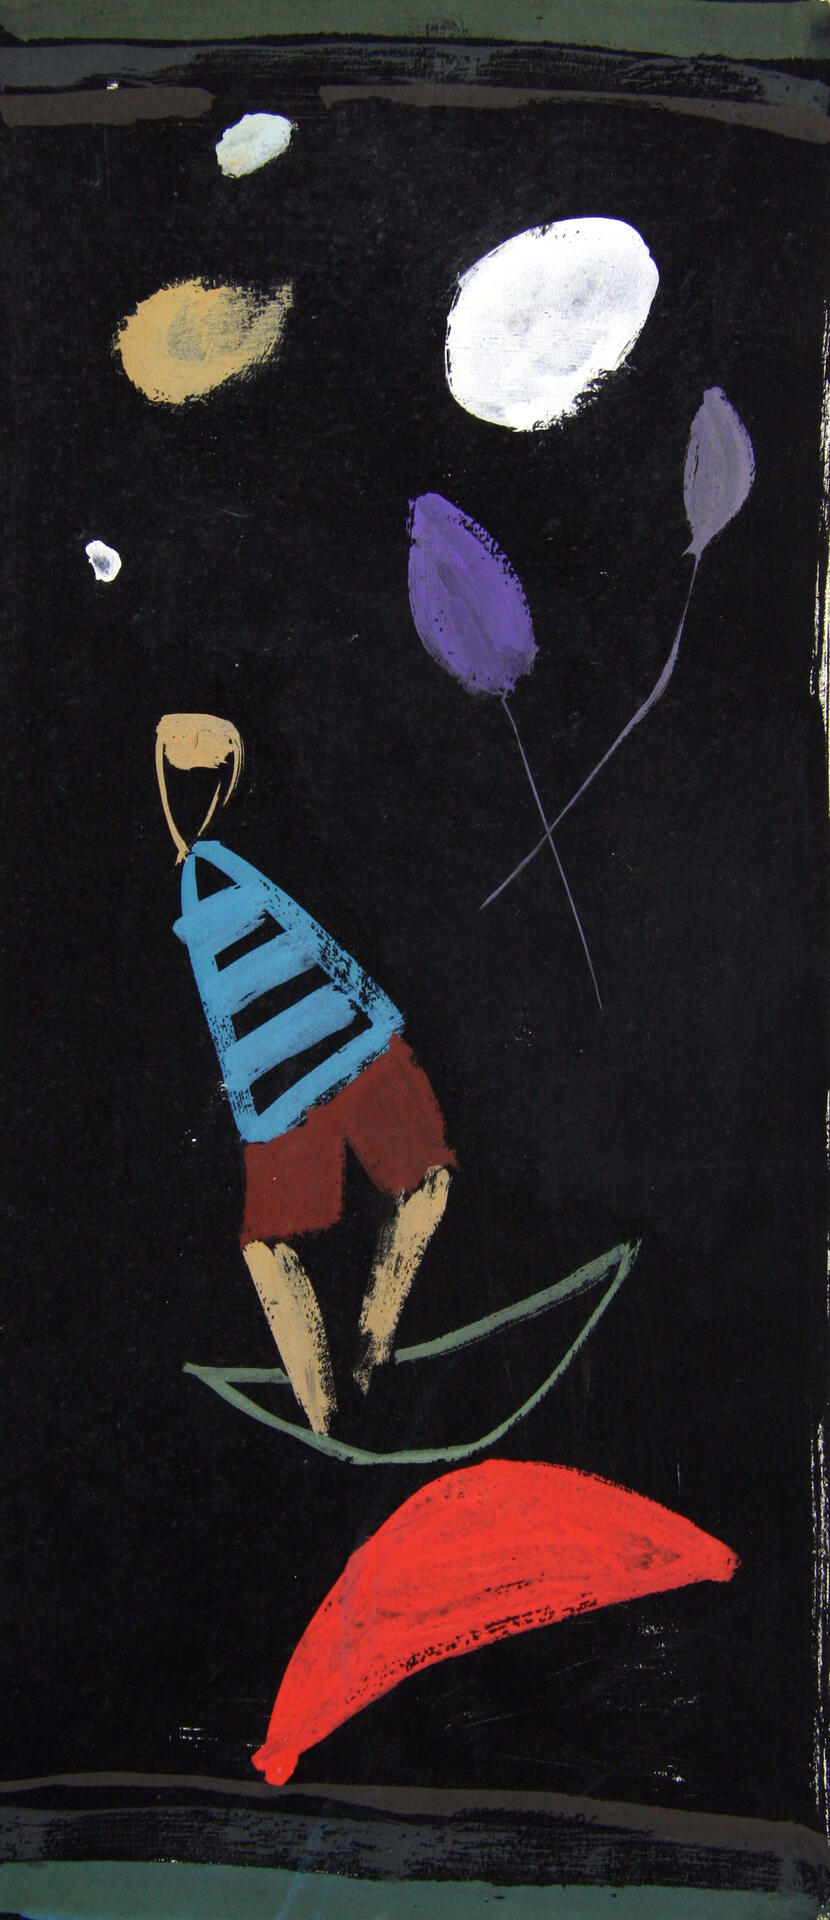 Figūra ir balionai, apie 1955. Guašas, popierius. Rytprūsių krašto muziejus